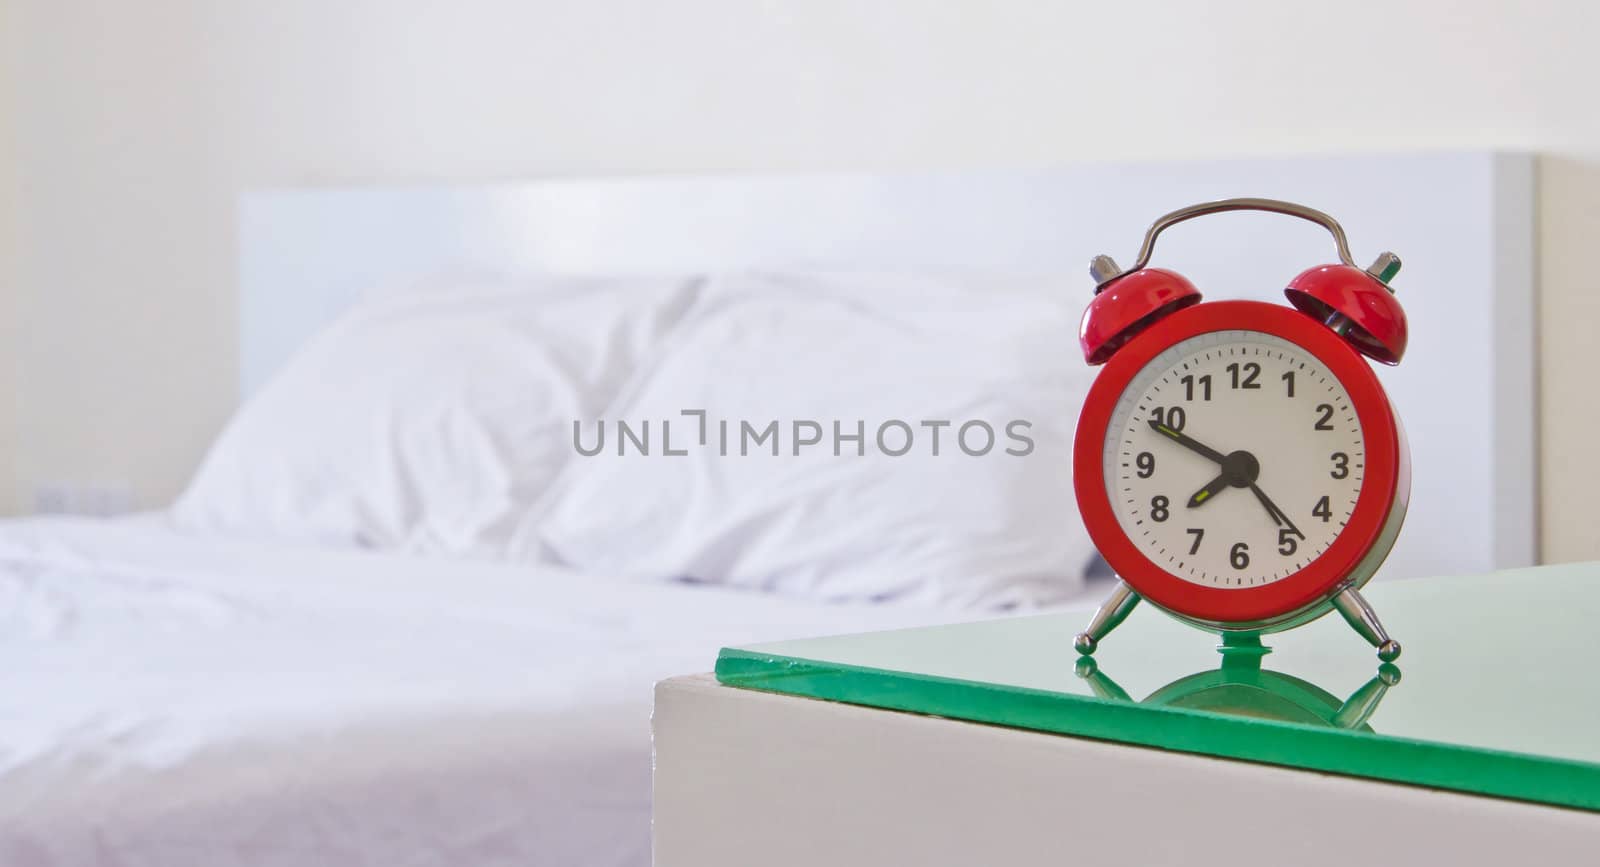 Alarm clock in the bedroom